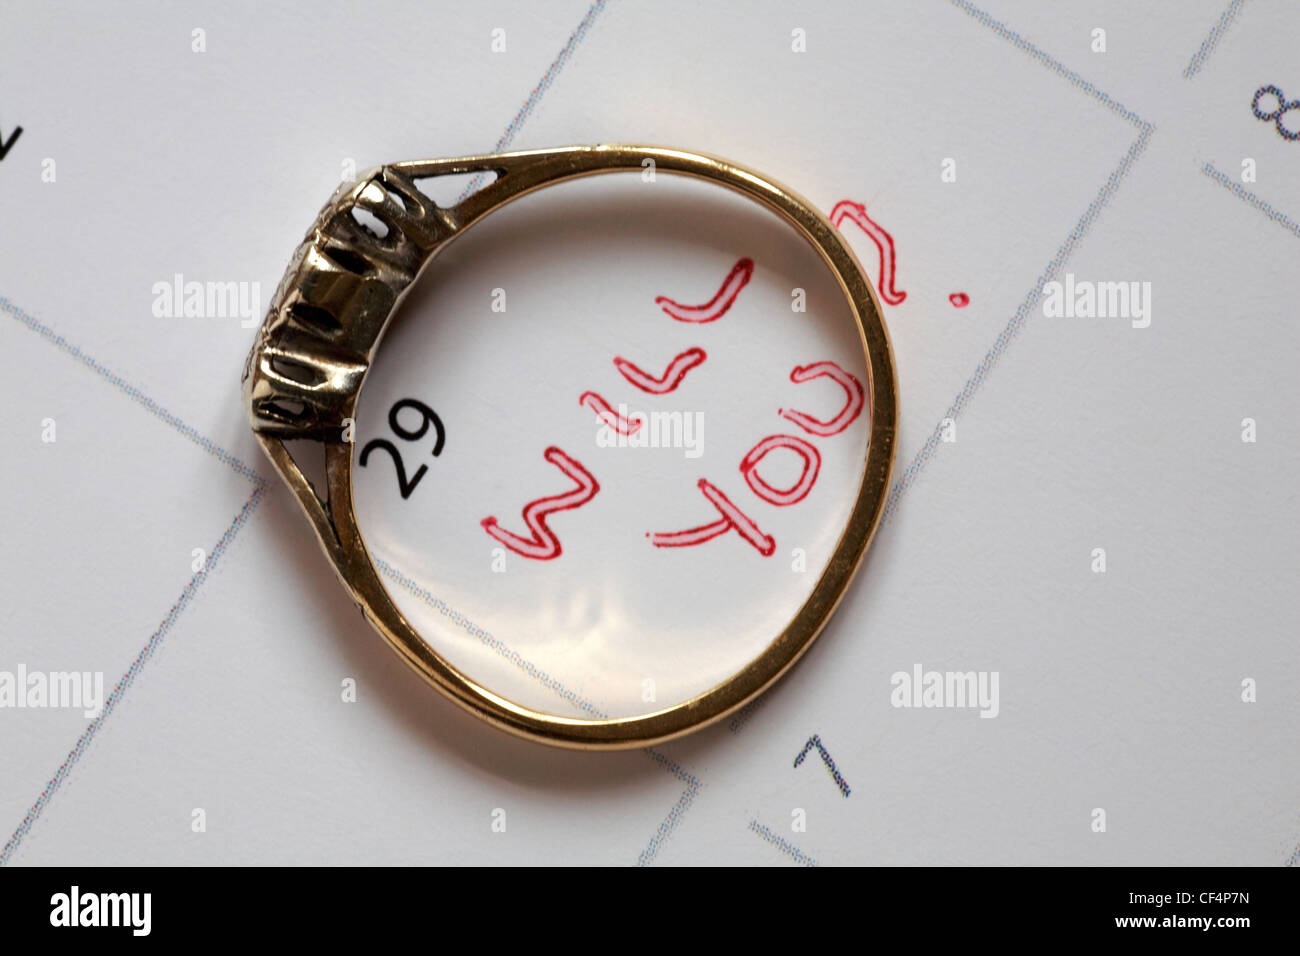 Anello di fidanzamento posato sul calendario che mostra la data del 29 febbraio anno bisestile con le parole Will You? scritto su di esso - proposta per l'anno bisestile Foto Stock